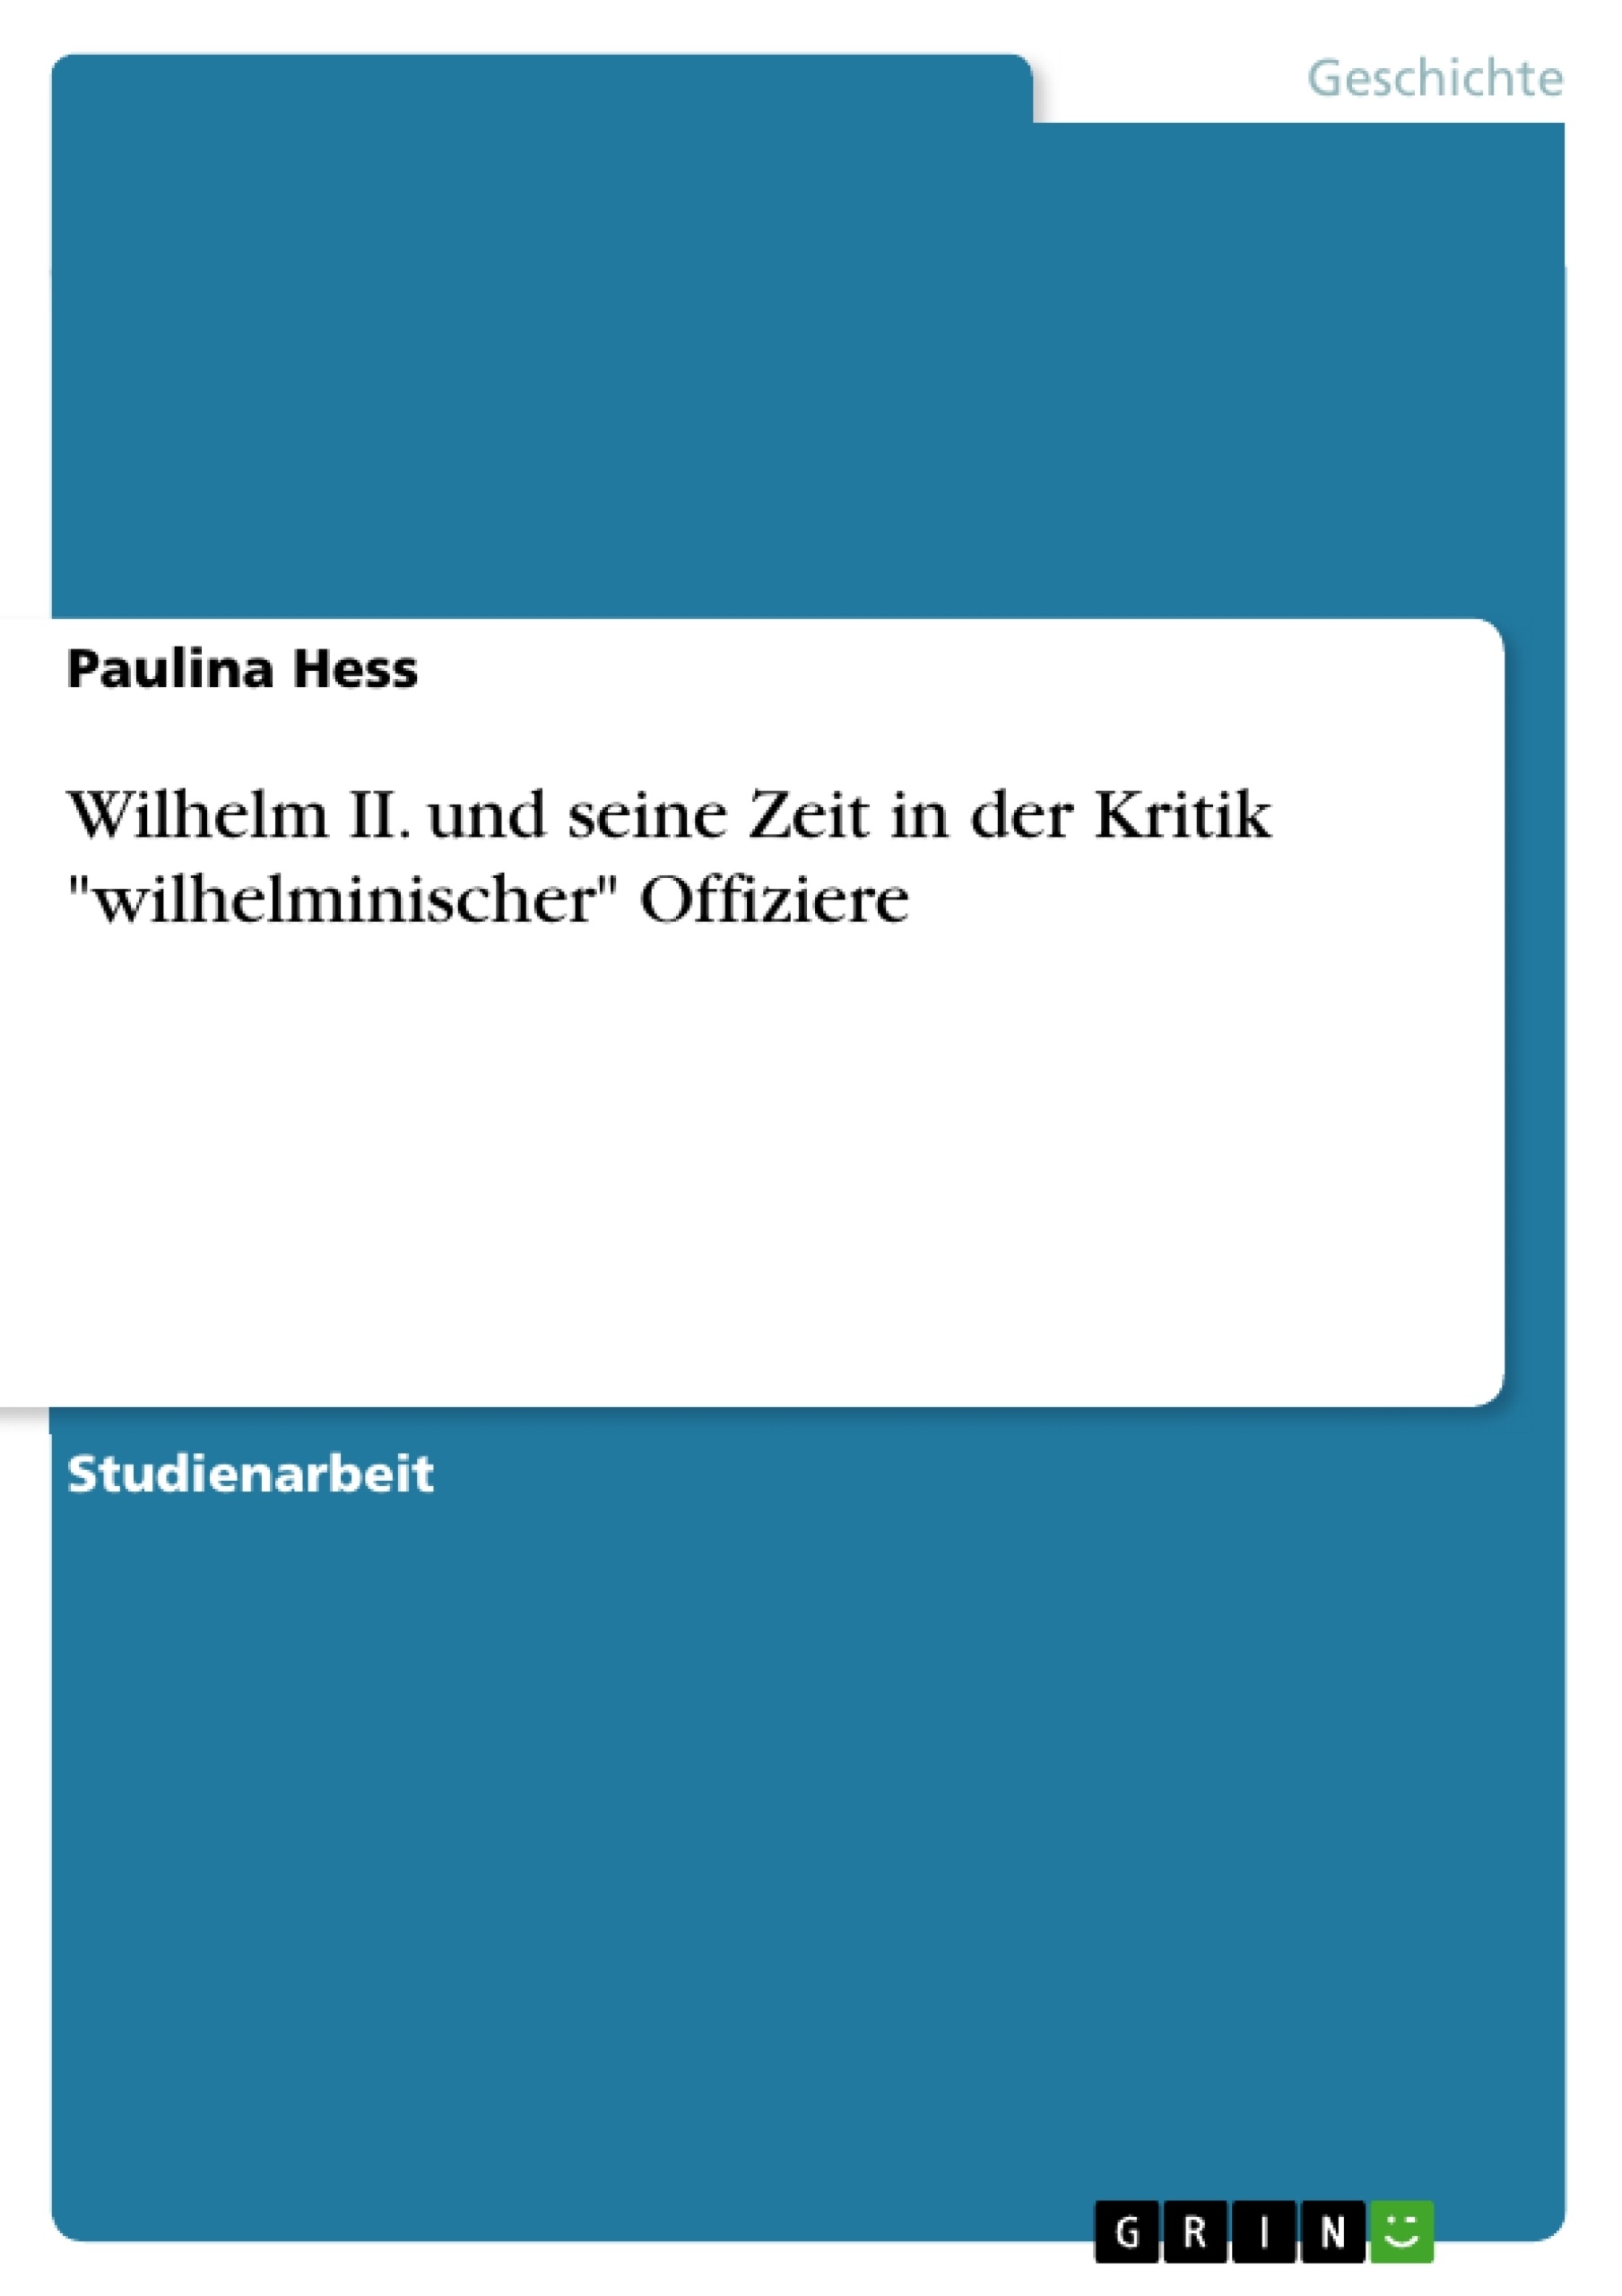 Título: Wilhelm II. und seine Zeit  in der Kritik "wilhelminischer" Offiziere